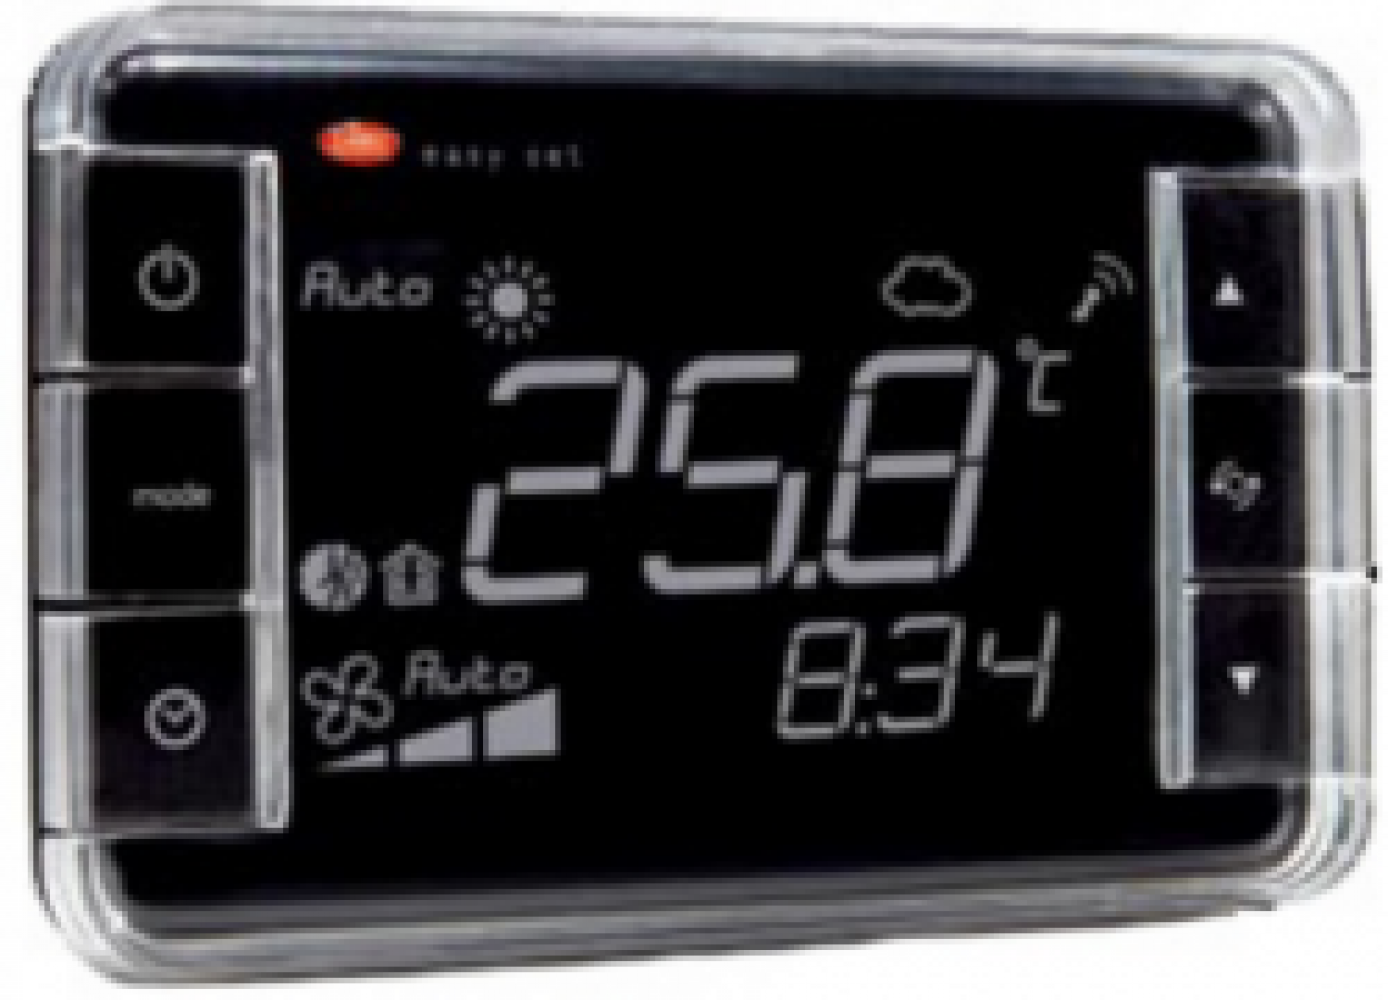 EW00TA2200 Термостат Easyset aria, контроль температуры, корпус черного цвета, &quot;инверсное&quot; отображение